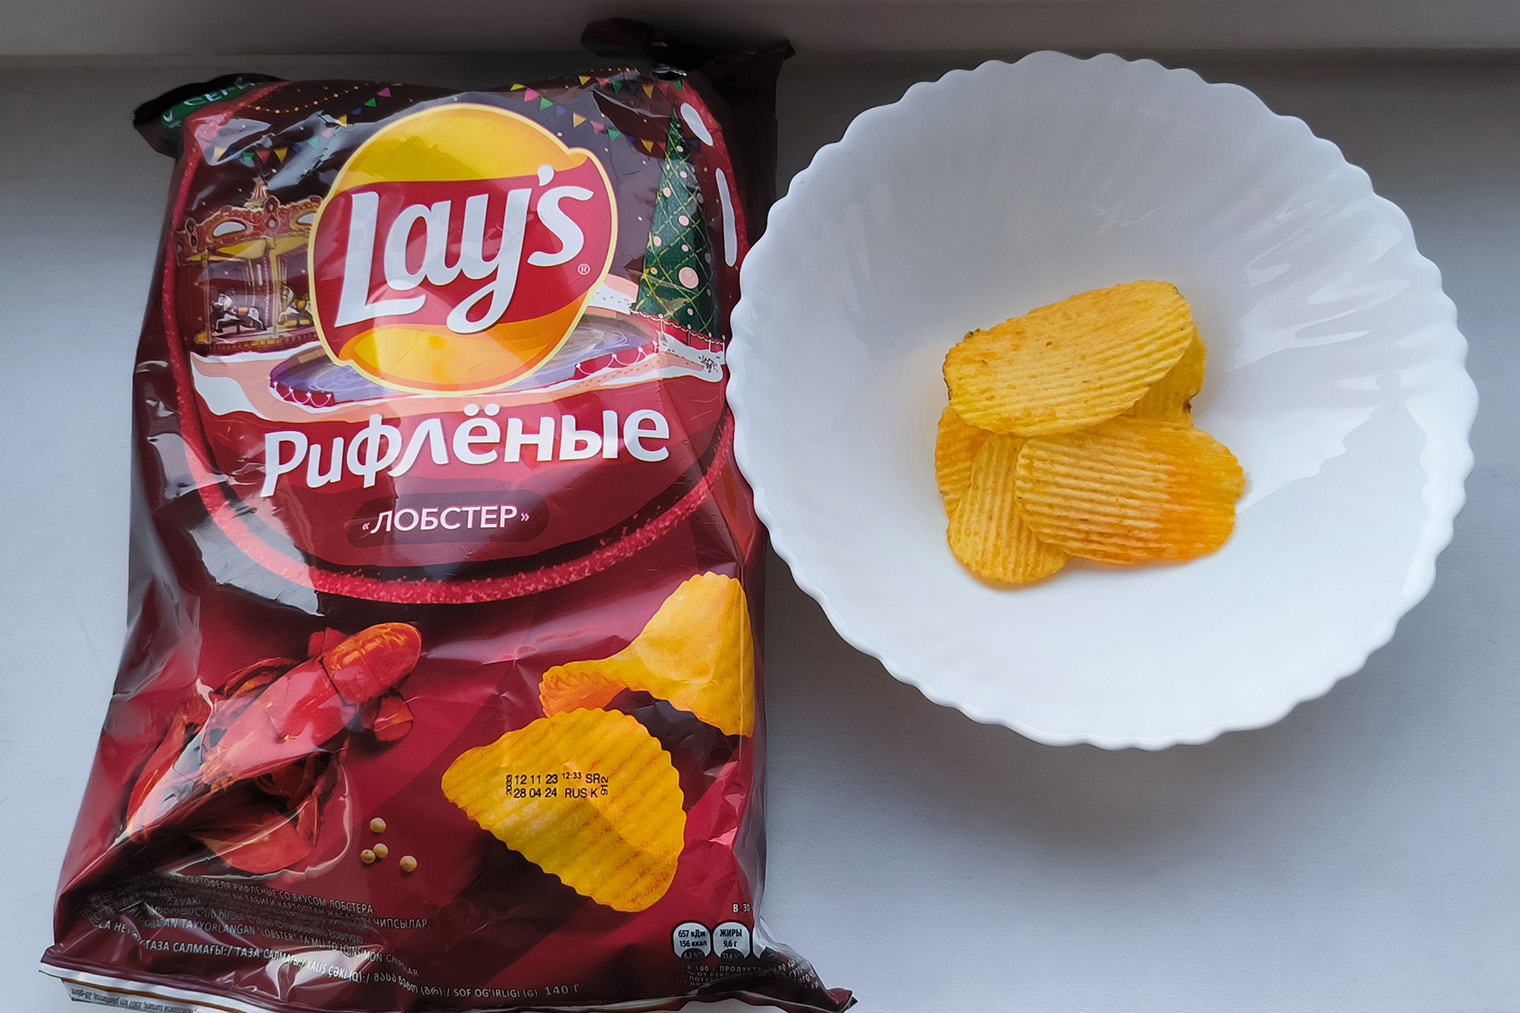 Эти чипсы сейчас продаются в новогодних упаковках с елочками — привлекают внимание. Чипсы внутри целые за редким исключением, цвет однородный